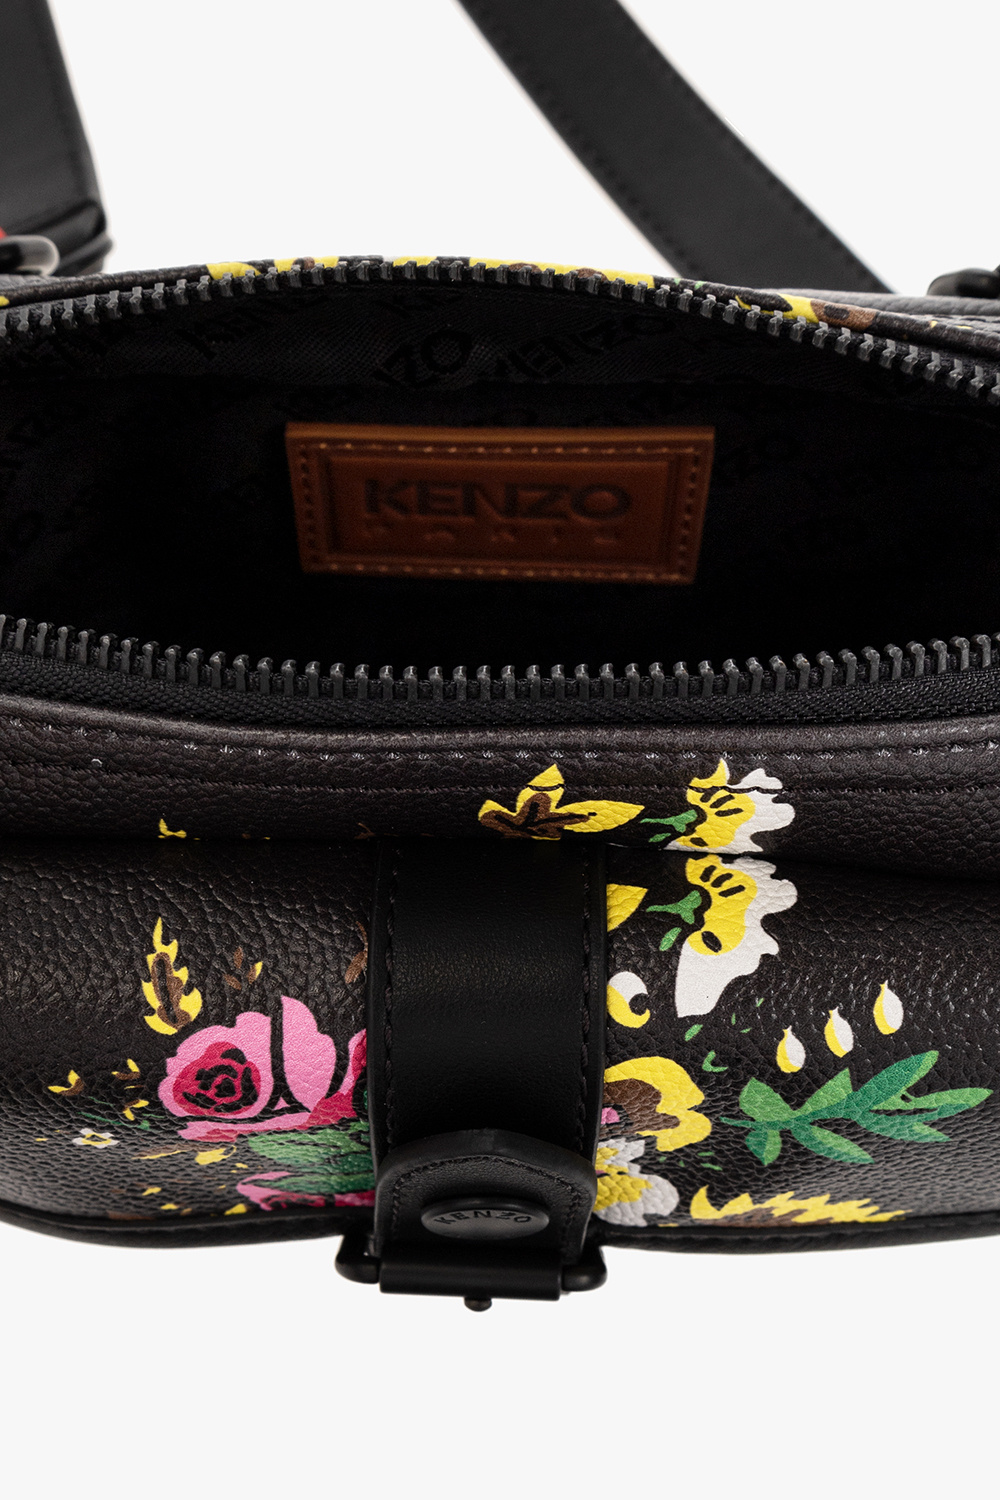 Kenzo Shoulder bag appliqu with floral motif